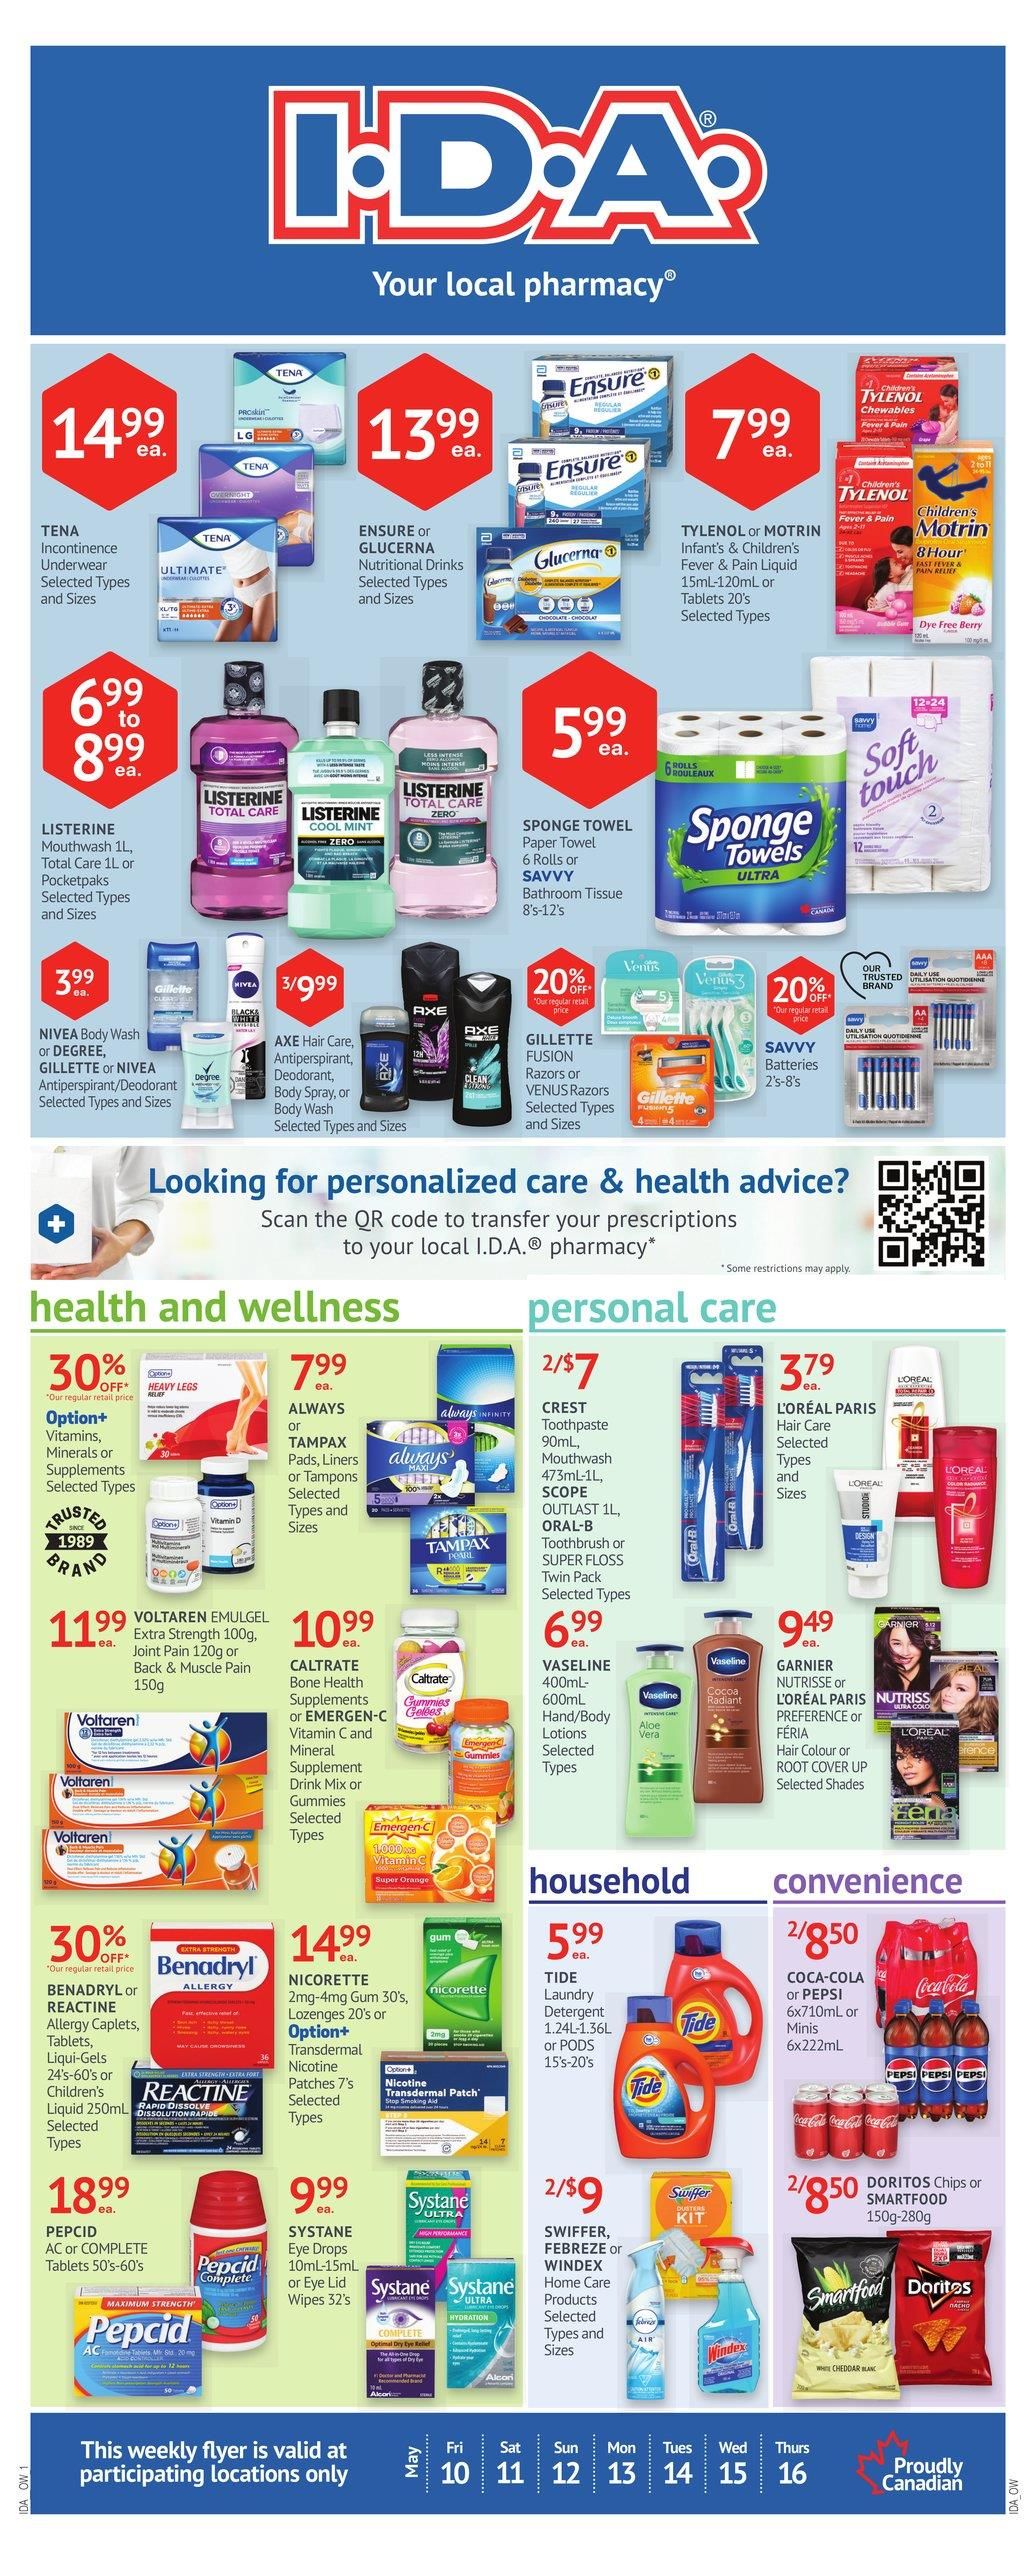 IDA Pharmacy - Weekly Flyer Specials